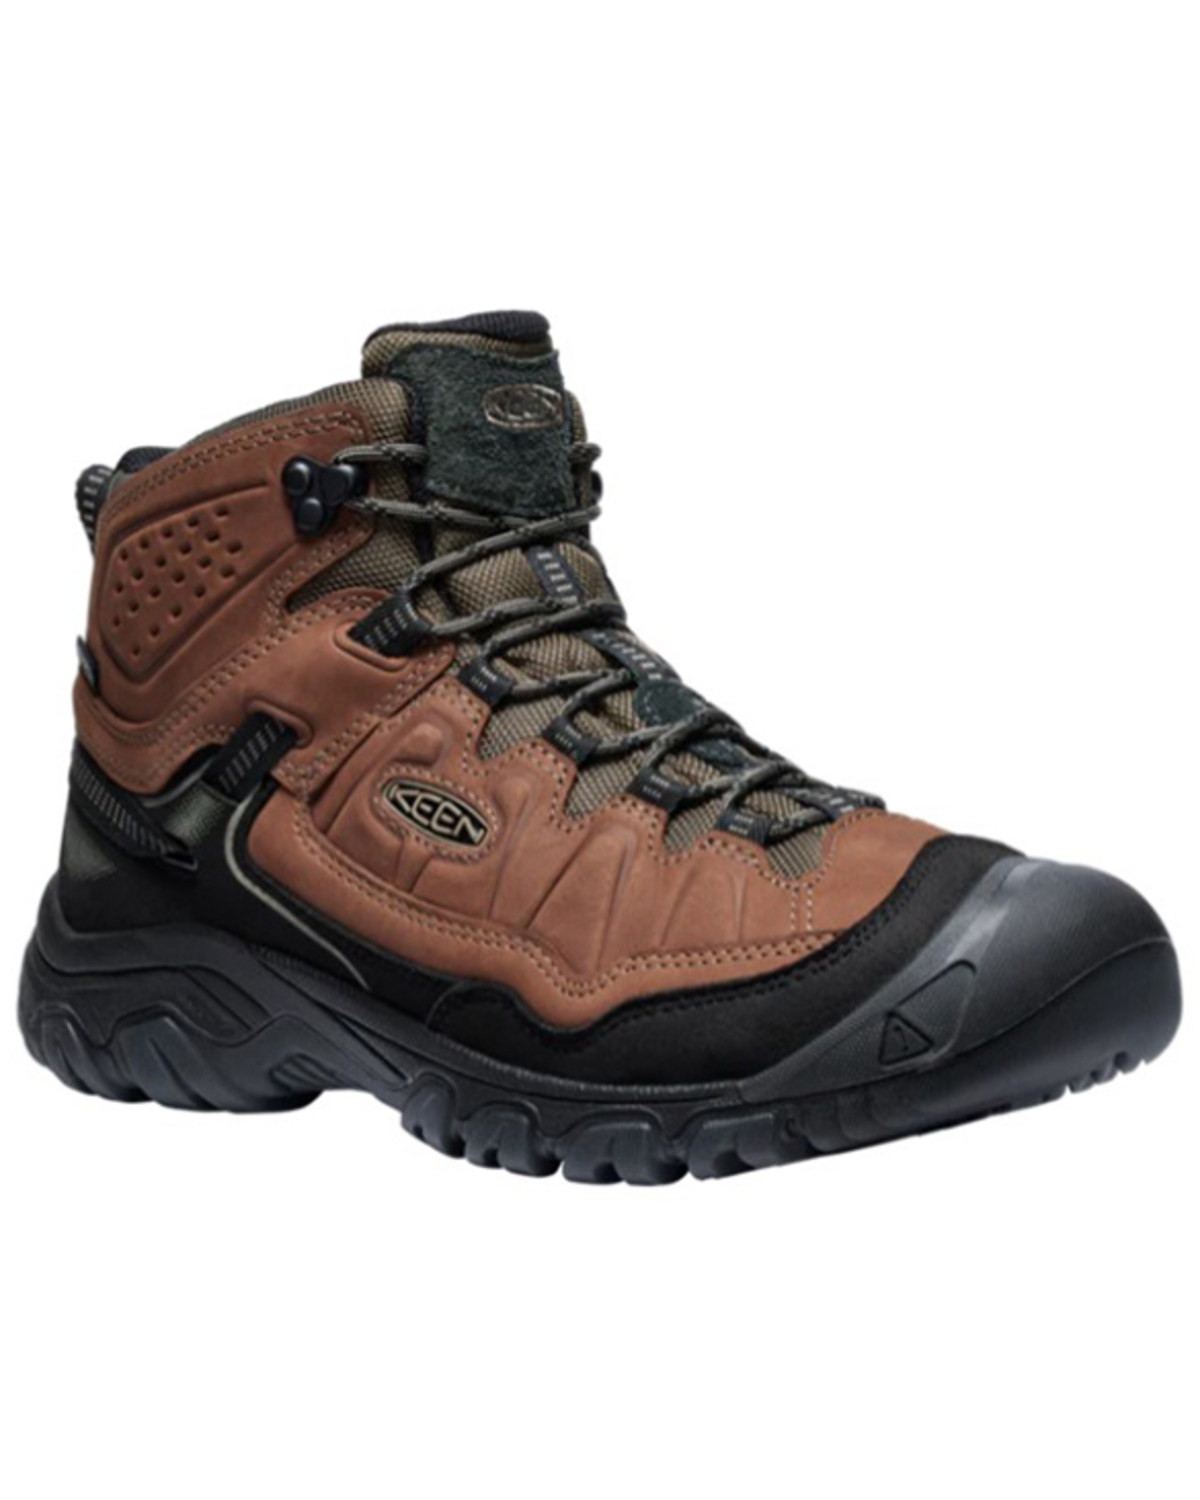 Keen Men's Targhee IV Waterproof Hiking Boots - Soft Toe